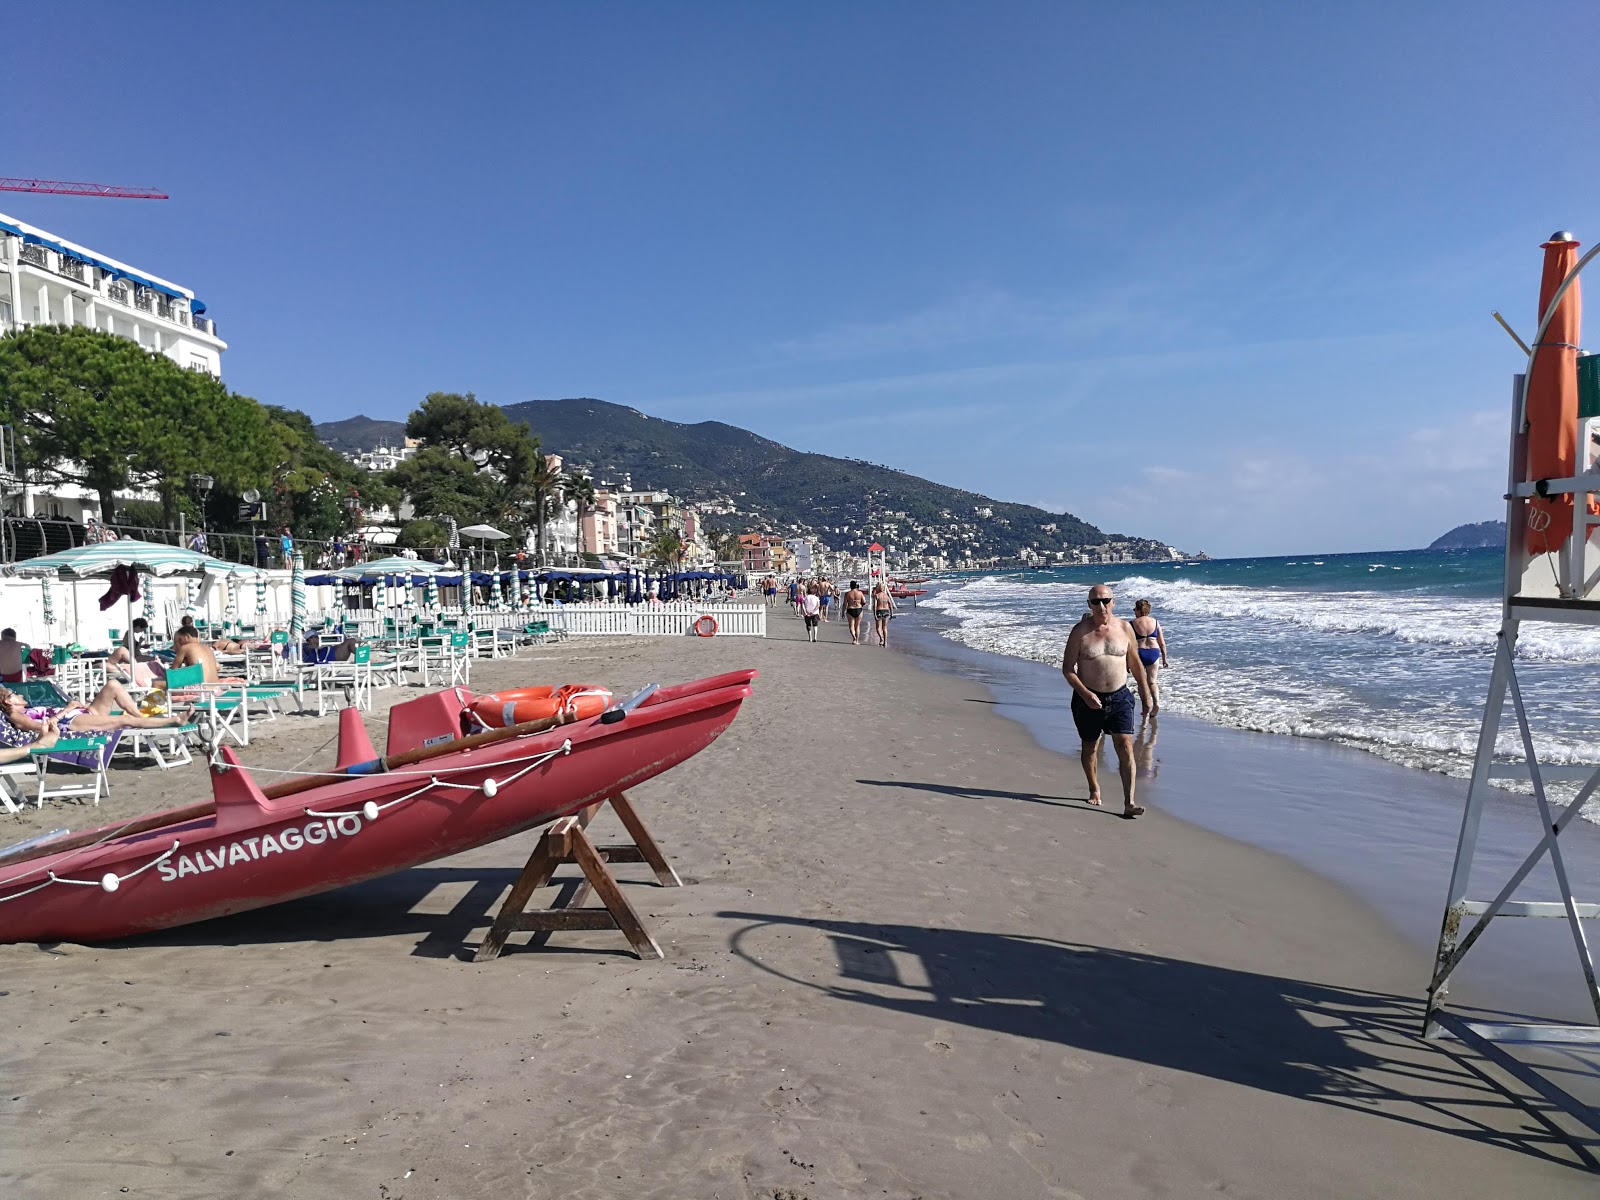 Foto von Spiaggia Attrezzata von Klippen umgeben